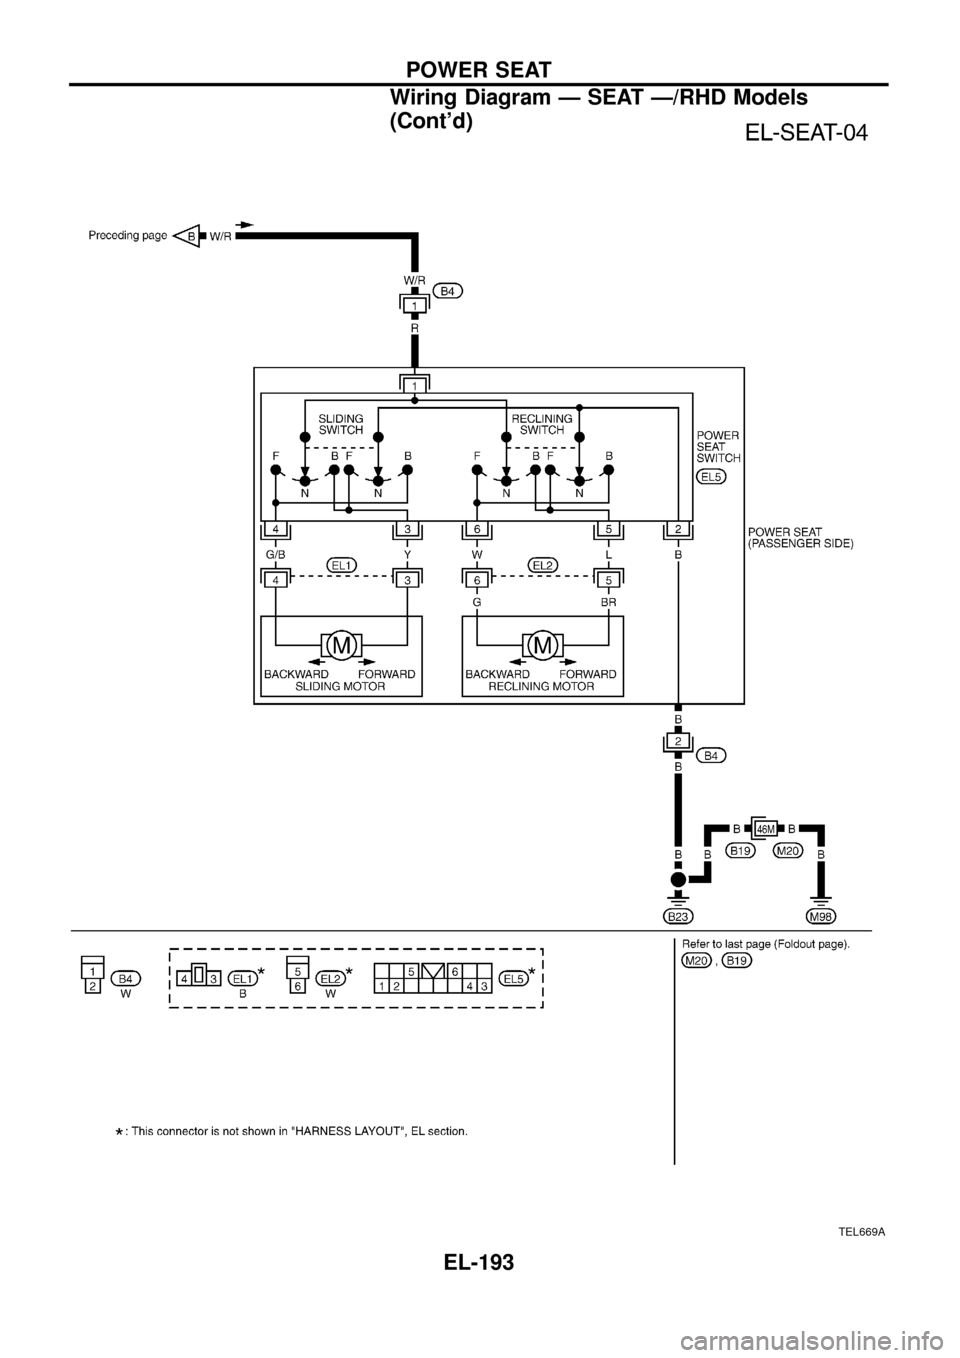 NISSAN PATROL 1998 Y61 / 5.G Electrical System Workshop Manual TEL669A
POWER SEAT
Wiring Diagram Ð SEAT Ð/RHD Models
(Contd)
EL-193 